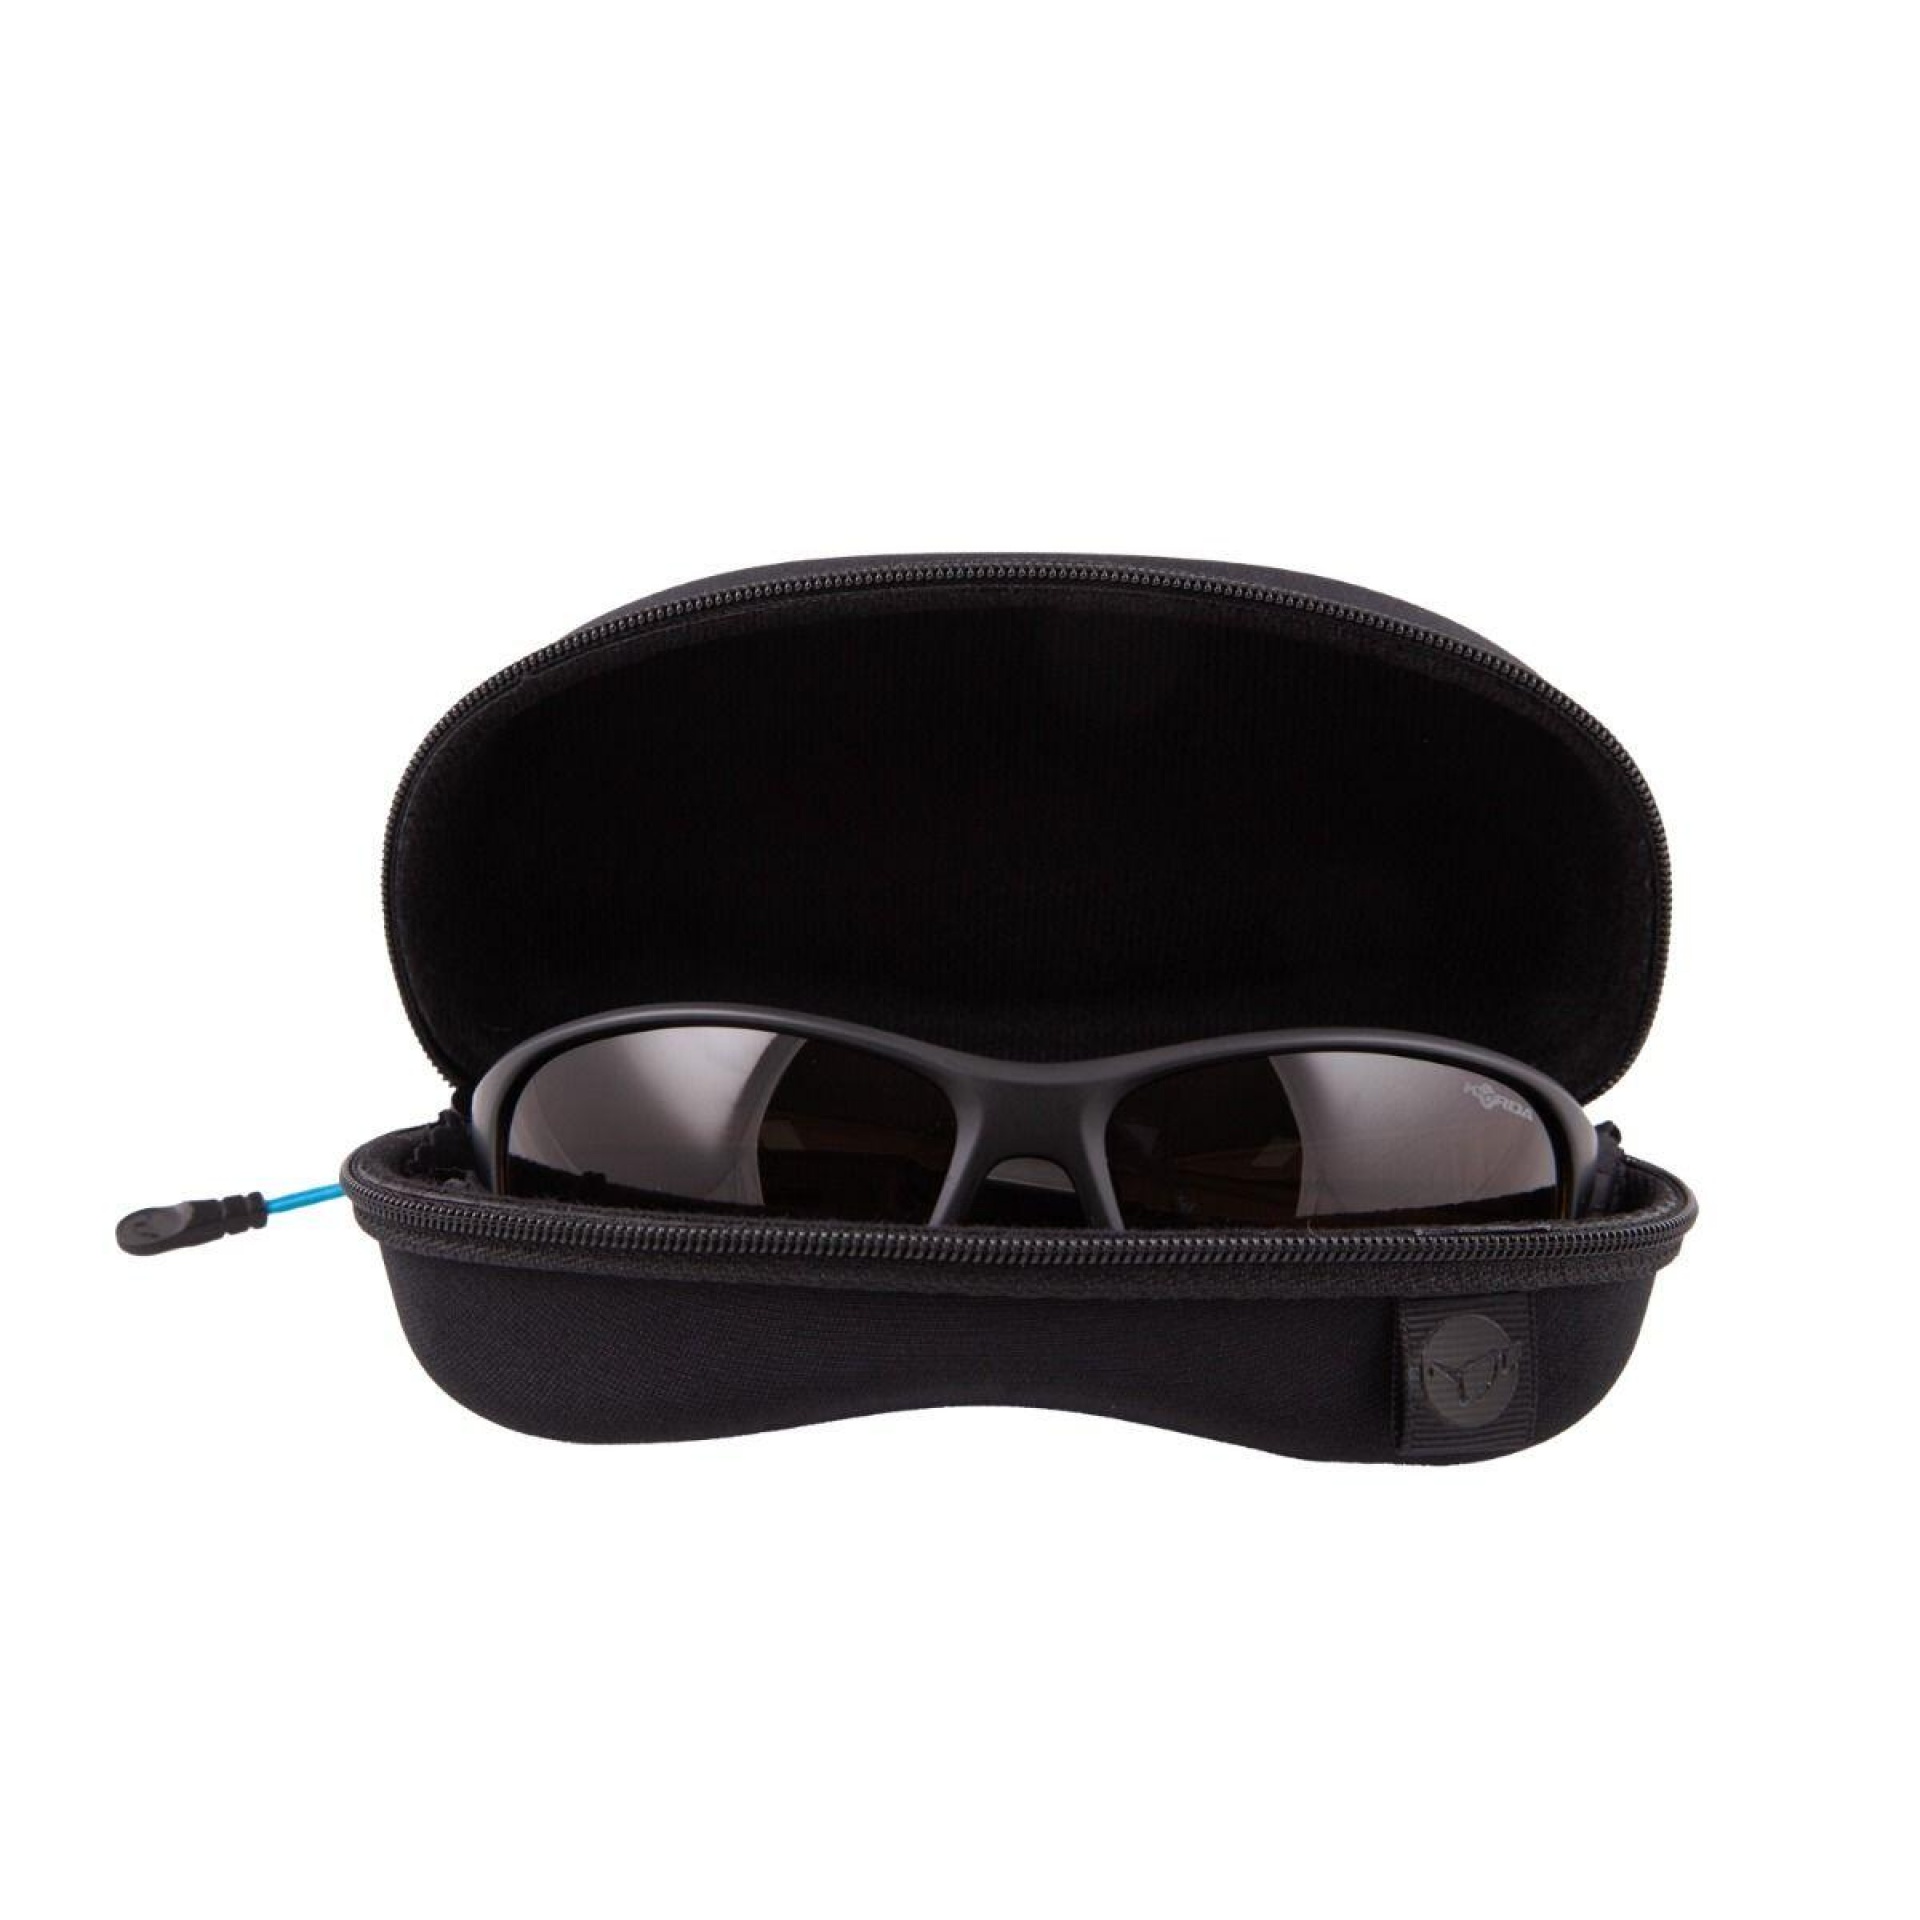 Korda Sunglasses Wraps Matt Black Frame/Brown Lens MK2